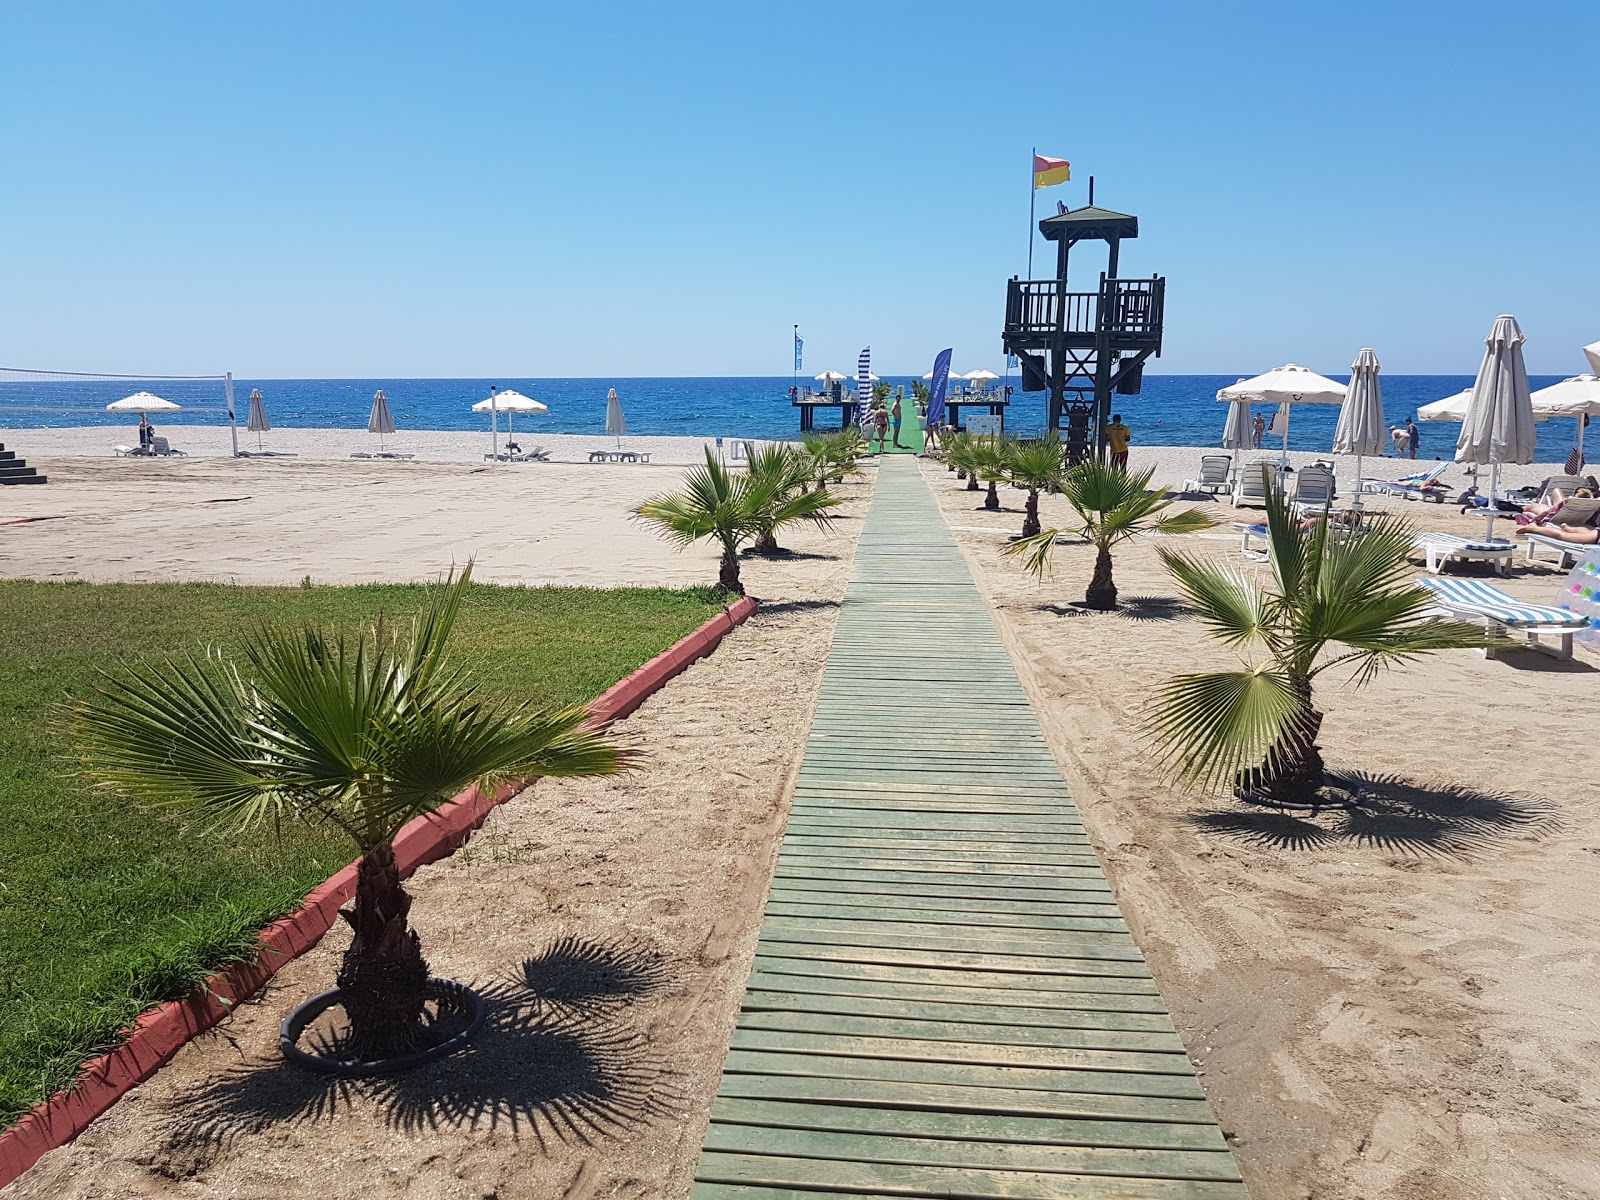 Foto af Elikesik beach - populært sted blandt afslapningskendere